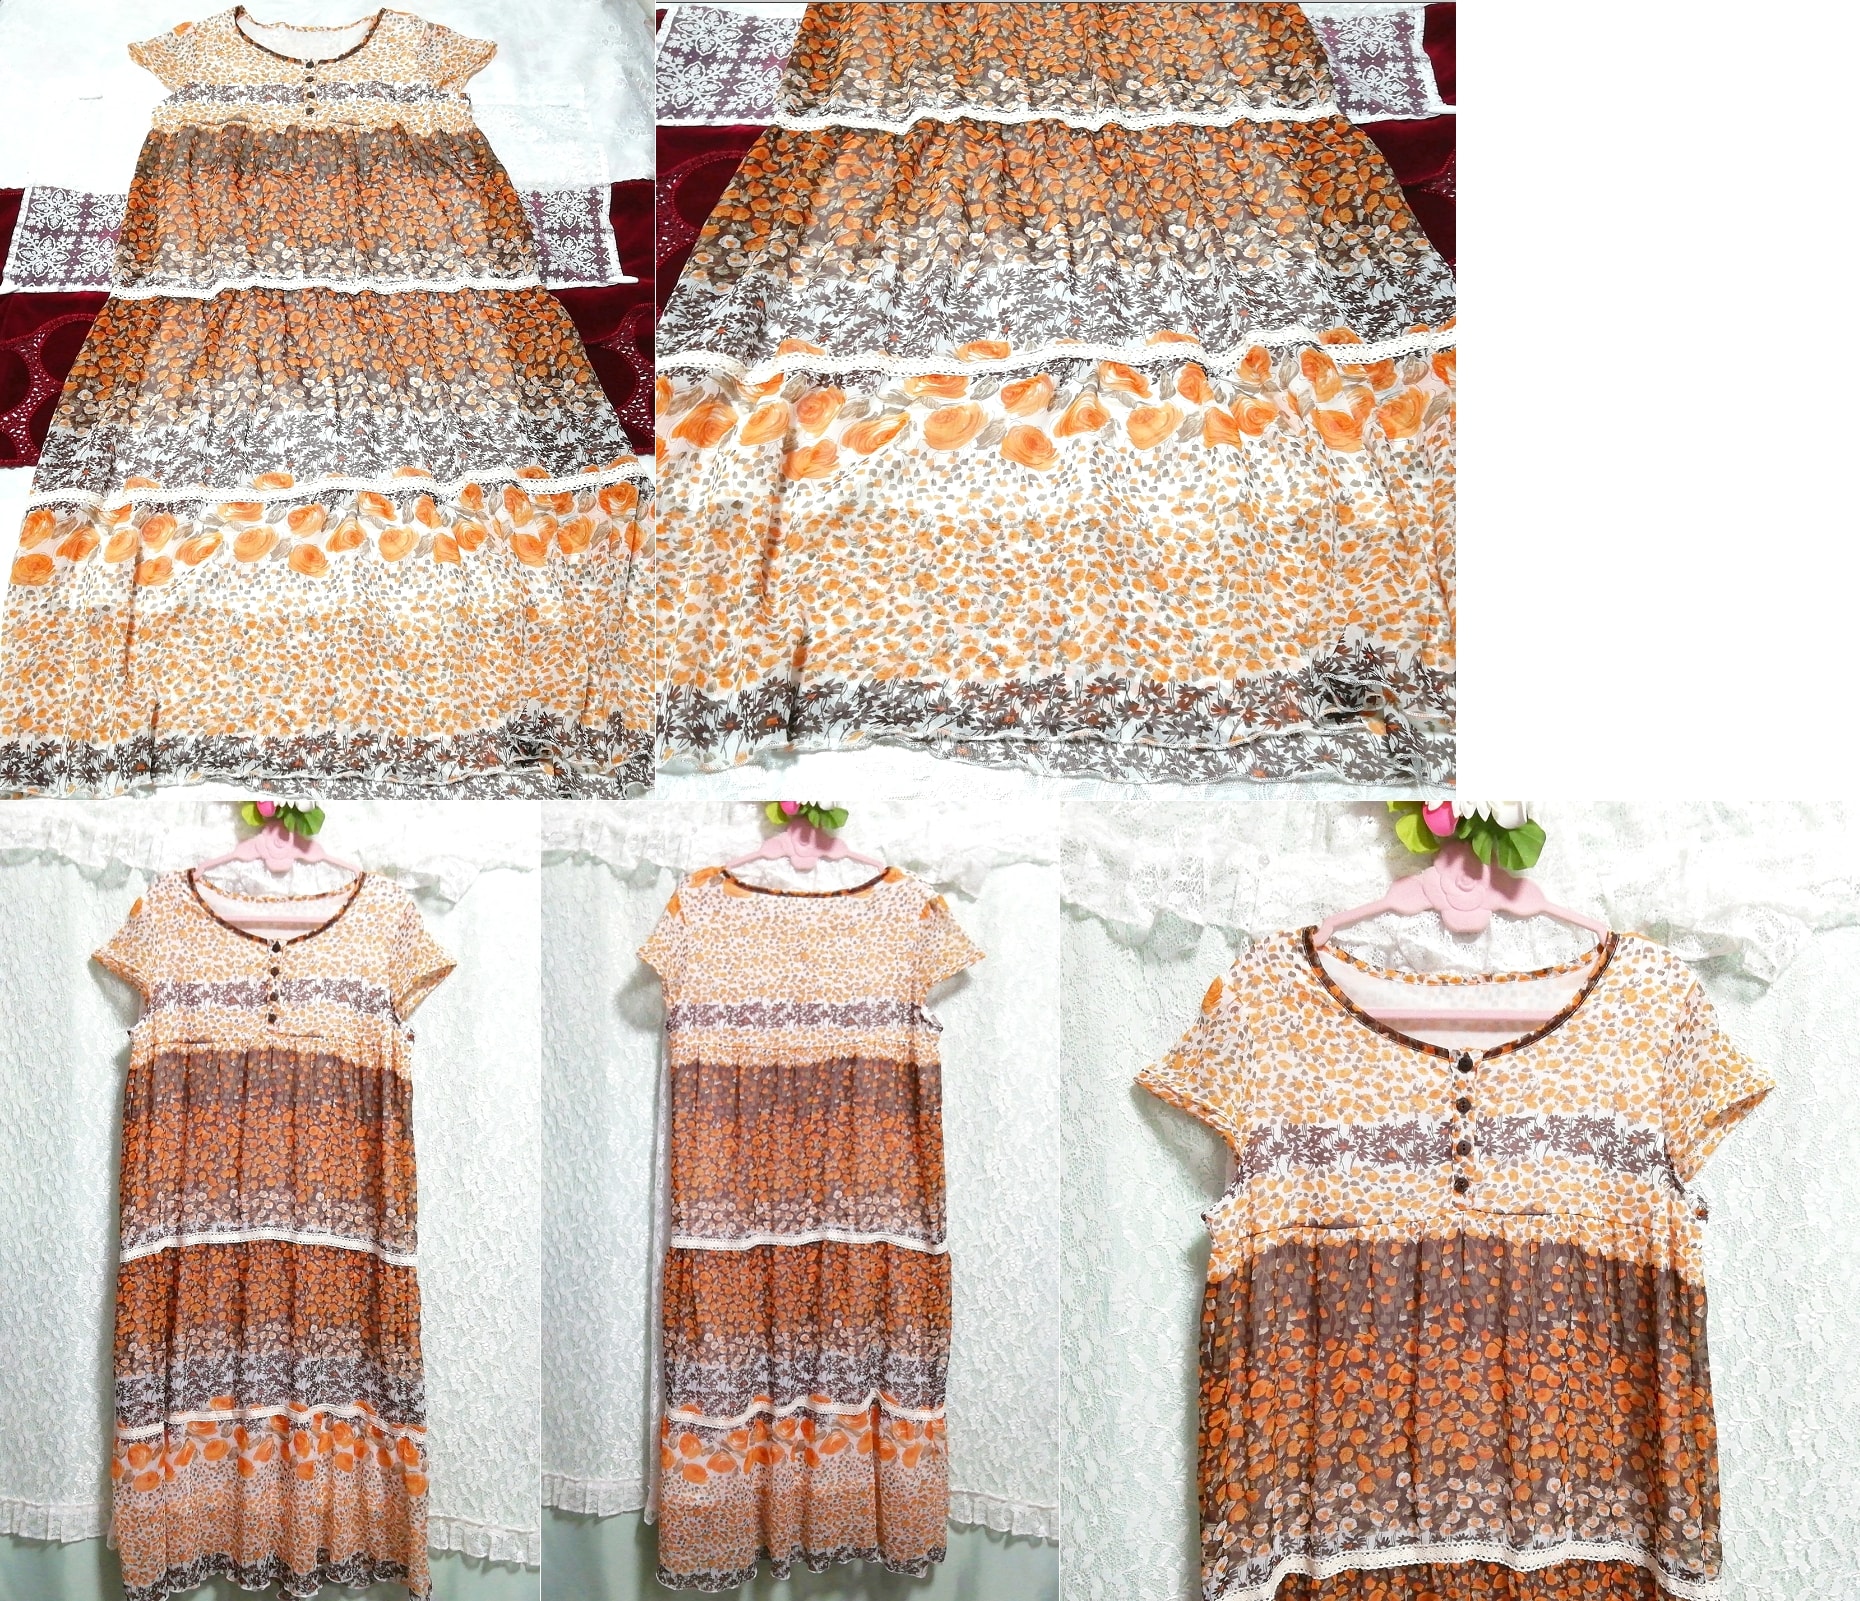 Vestido camisón negligee tipo túnica larga de gasa con estampado floral marrón anaranjado y manga corta, sayo, manga corta, talla m